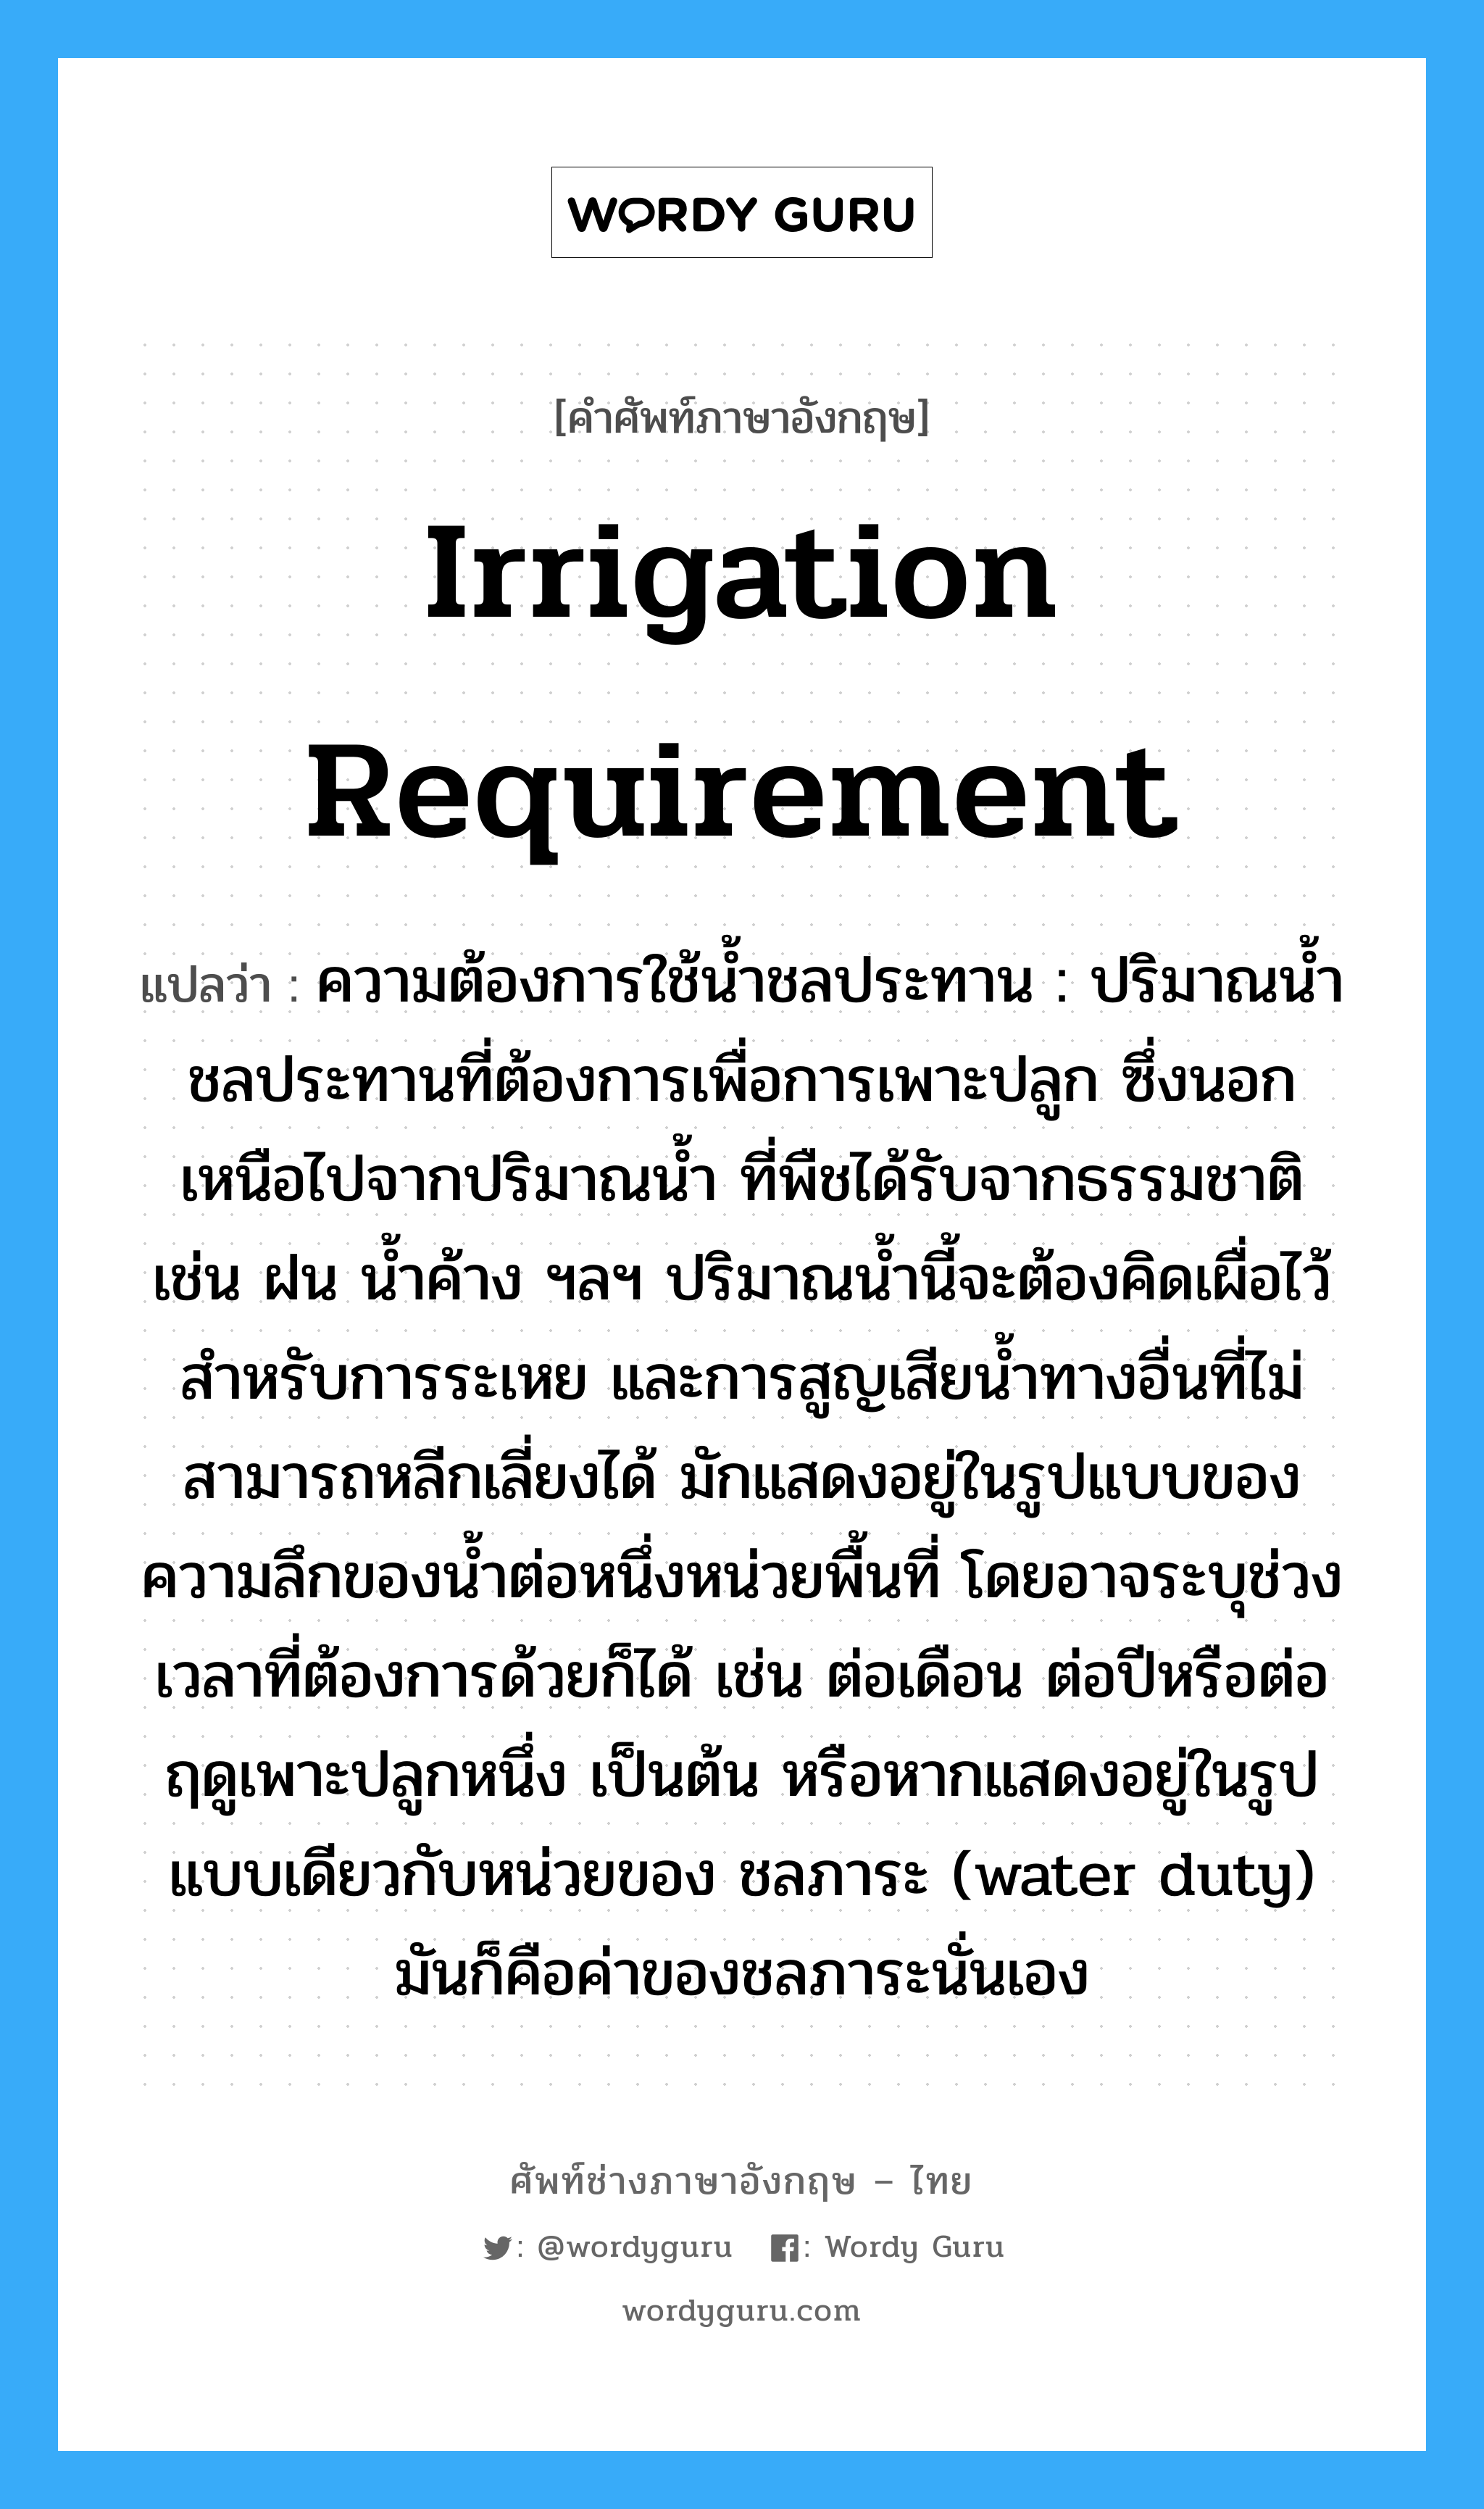 irrigation requirement แปลว่า?, คำศัพท์ช่างภาษาอังกฤษ - ไทย irrigation requirement คำศัพท์ภาษาอังกฤษ irrigation requirement แปลว่า ความต้องการใช้น้ำชลประทาน : ปริมาณน้ำชลประทานที่ต้องการเพื่อการเพาะปลูก ซึ่งนอกเหนือไปจากปริมาณน้ำ ที่พืชได้รับจากธรรมชาติ เช่น ฝน น้ำค้าง ฯลฯ ปริมาณน้ำนี้จะต้องคิดเผื่อไว้สำหรับการระเหย และการสูญเสียน้ำทางอื่นที่ไม่สามารถหลีกเลี่ยงได้ มักแสดงอยู่ในรูปแบบของความลึกของน้ำต่อหนึ่งหน่วยพื้นที่ โดยอาจระบุช่วงเวลาที่ต้องการด้วยก็ได้ เช่น ต่อเดือน ต่อปีหรือต่อฤดูเพาะปลูกหนึ่ง เป็นต้น หรือหากแสดงอยู่ในรูปแบบเดียวกับหน่วยของ ชลภาระ (water duty) มันก็คือค่าของชลภาระนั่นเอง